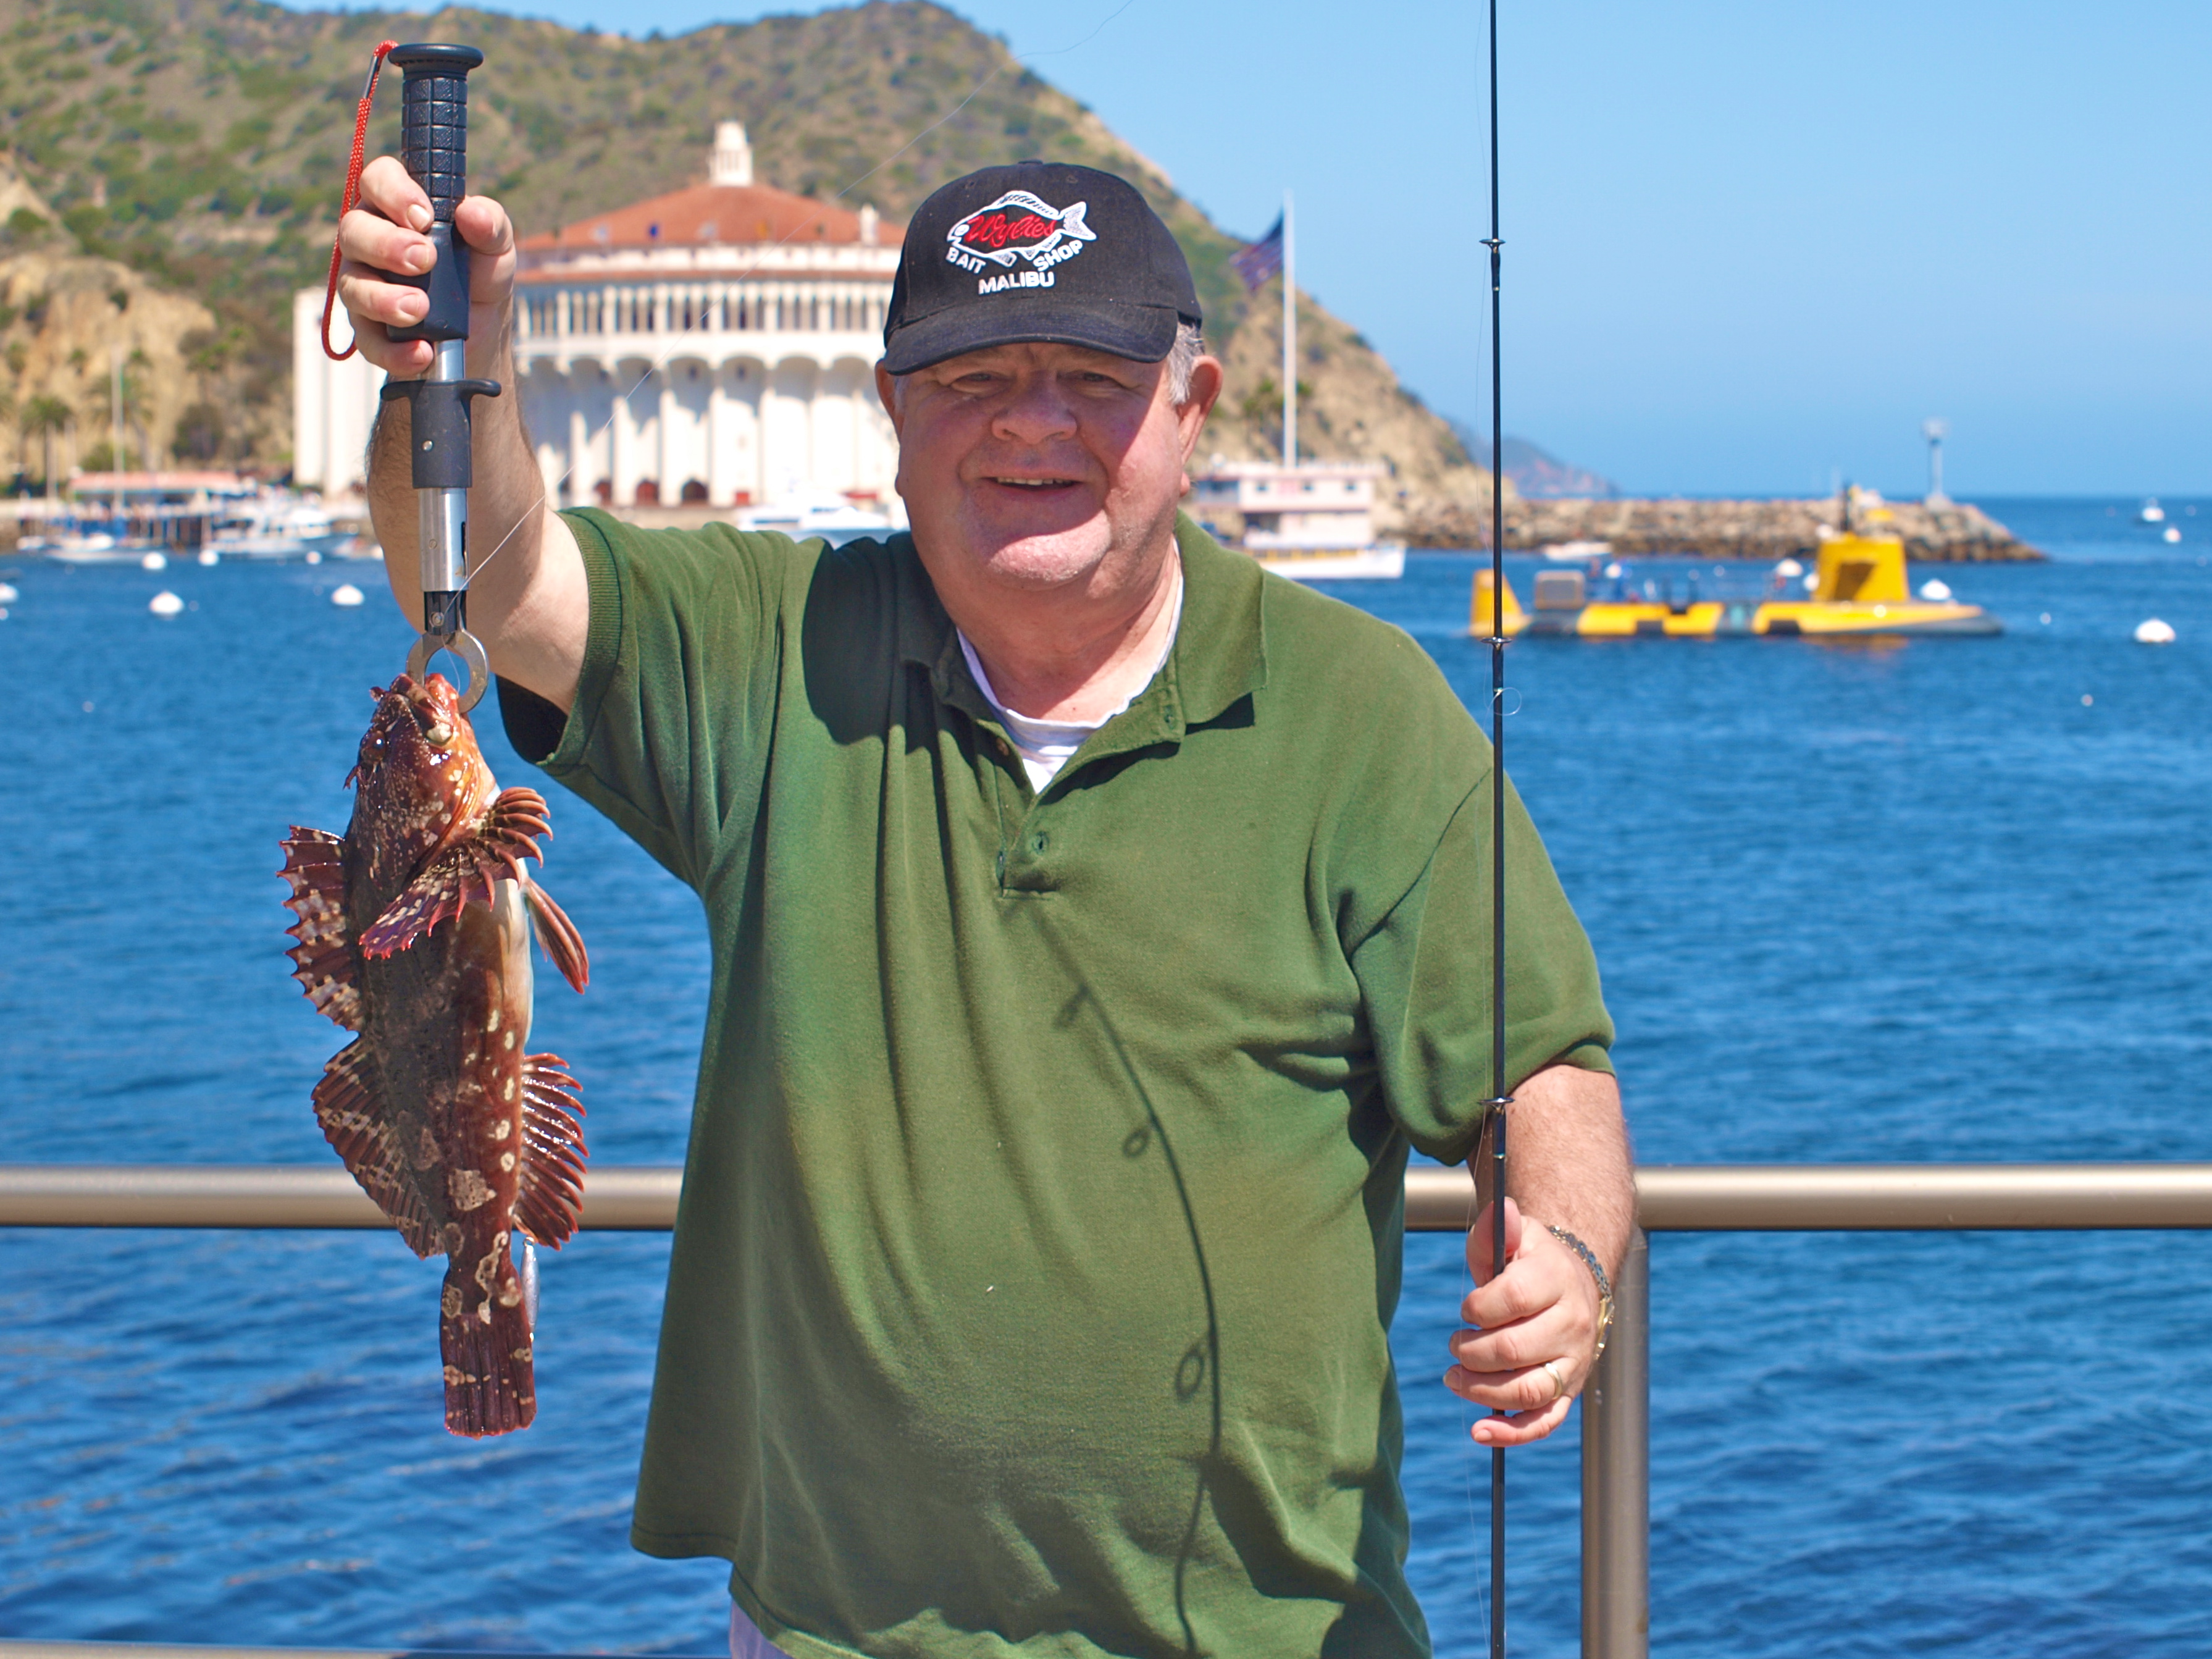 Cabrillo Mole — Avalon, Catalina Island - Pier Fishing in California